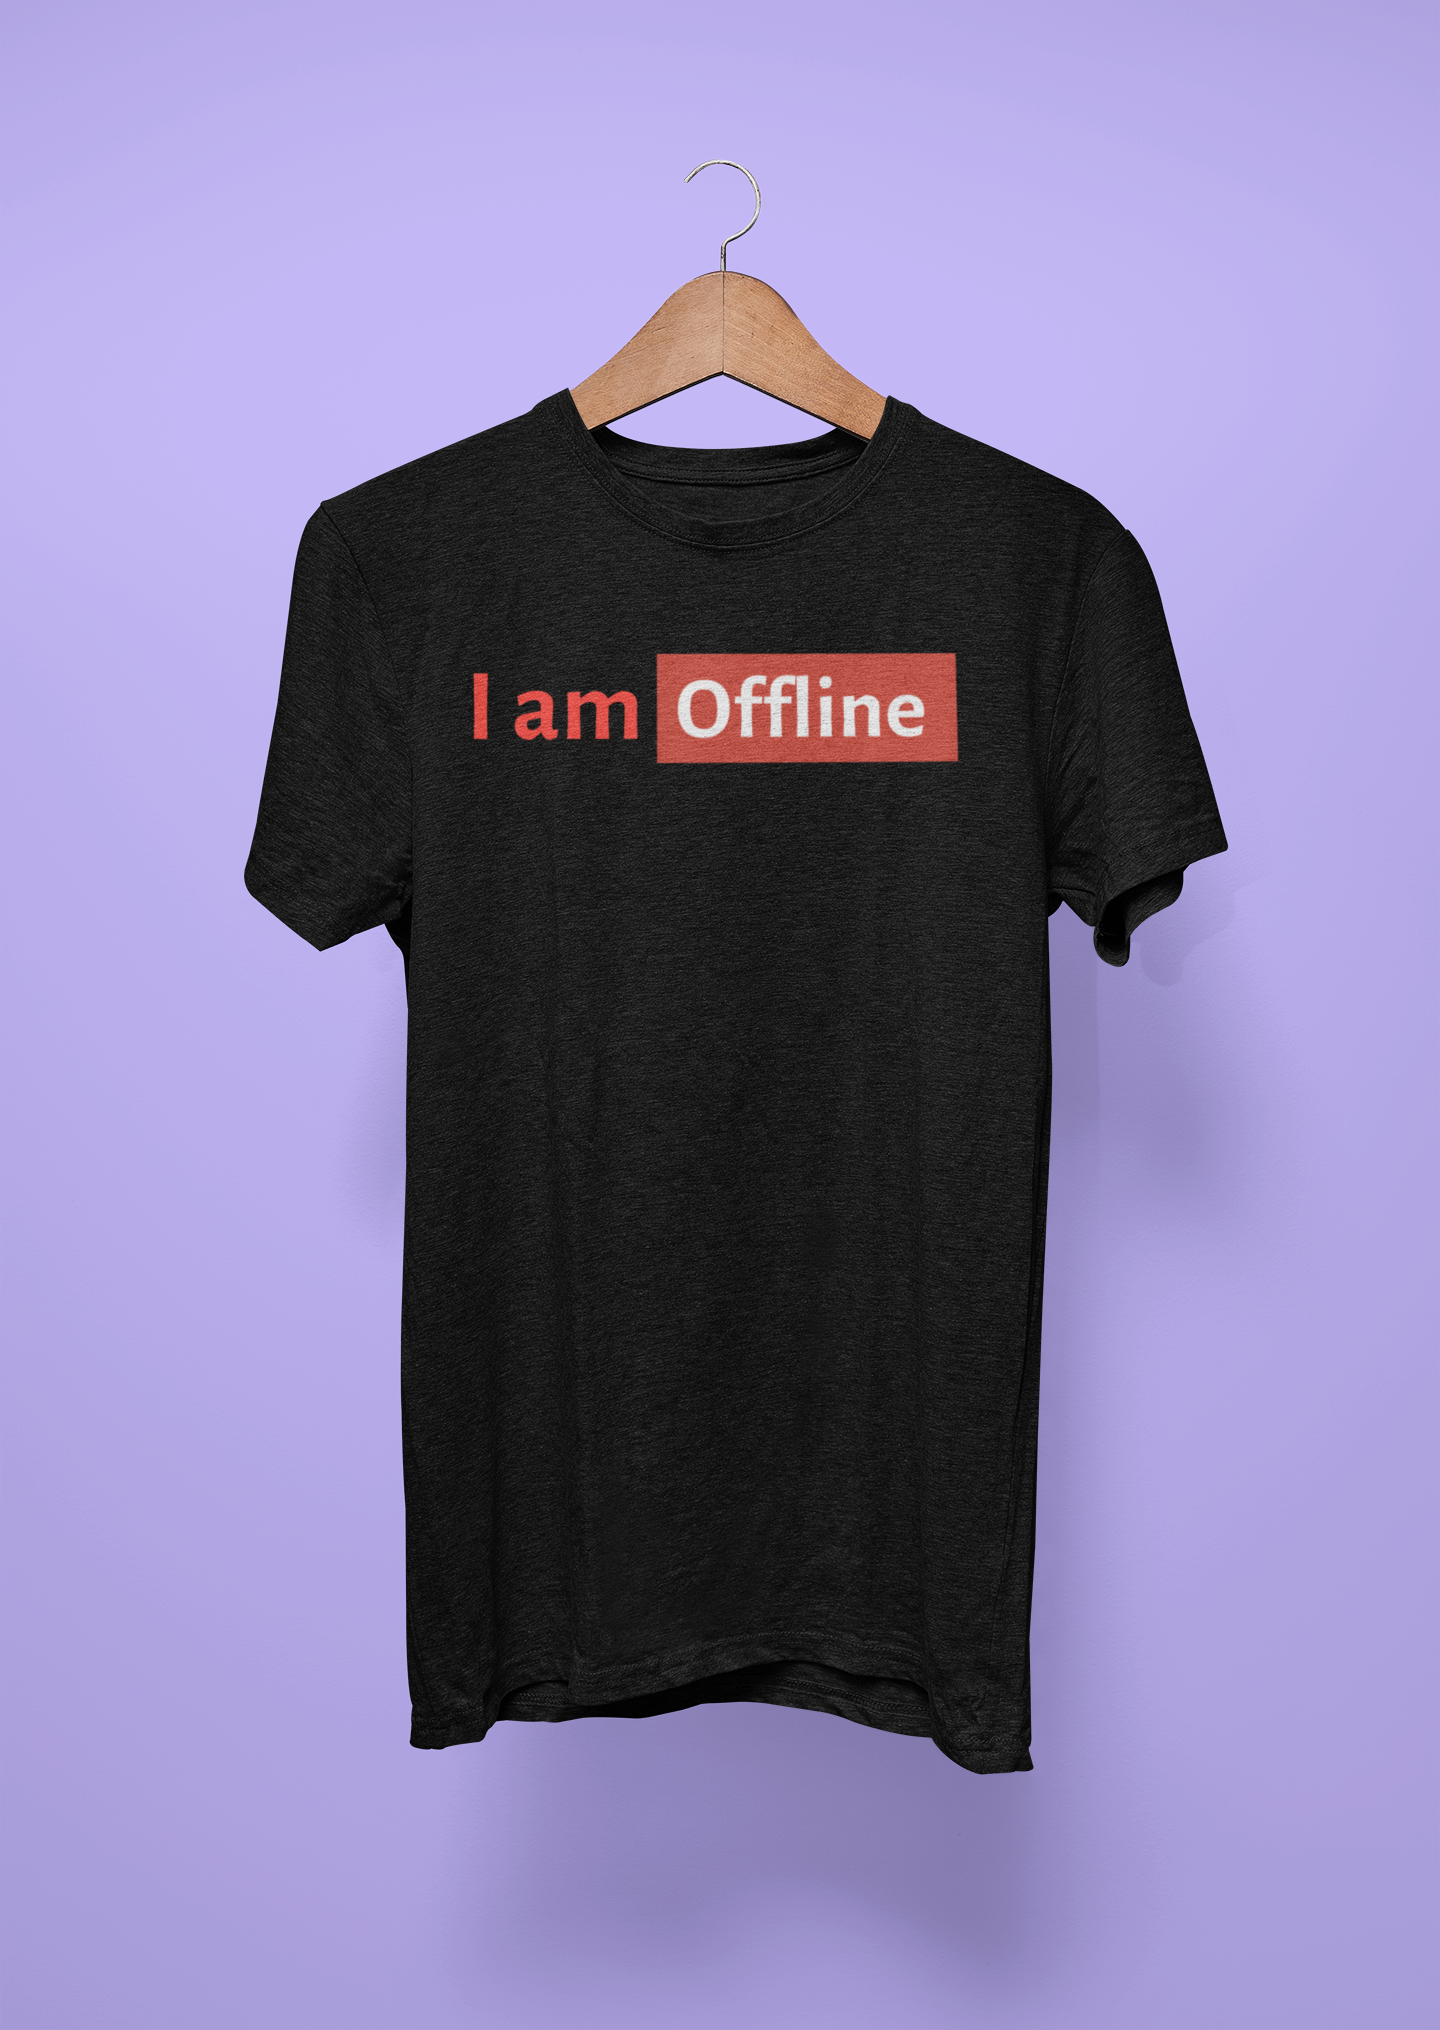 I am Offline